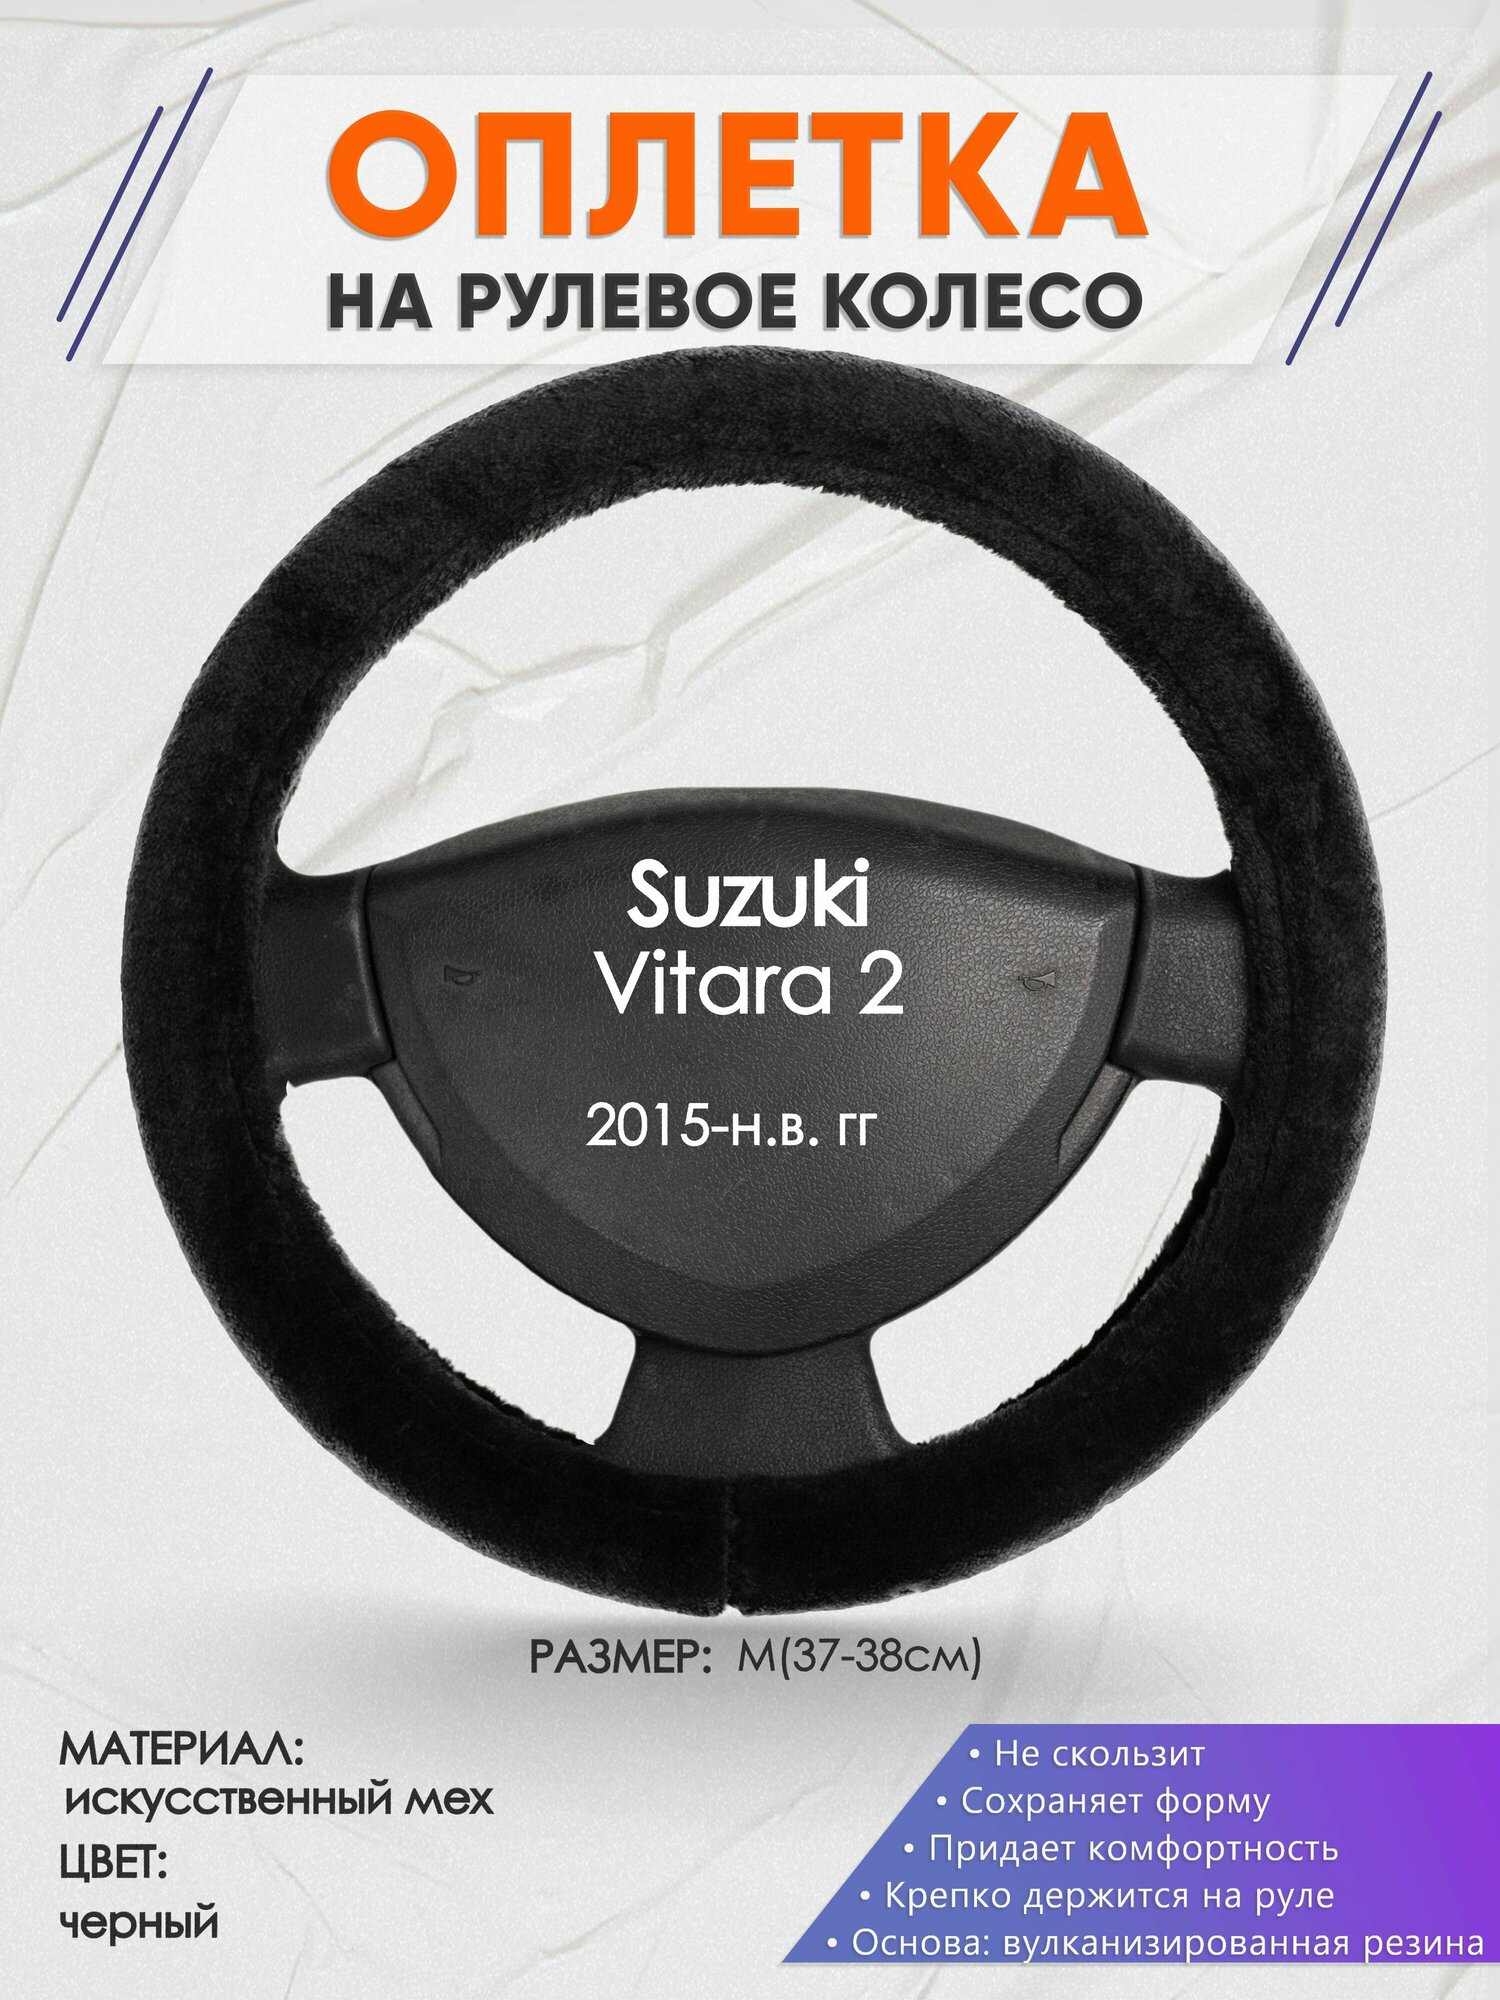 Оплетка на руль для Suzuki Vitara 2(Сузуки Витара 2) 2015-н. в, M(37-38см), Искусственный мех 45